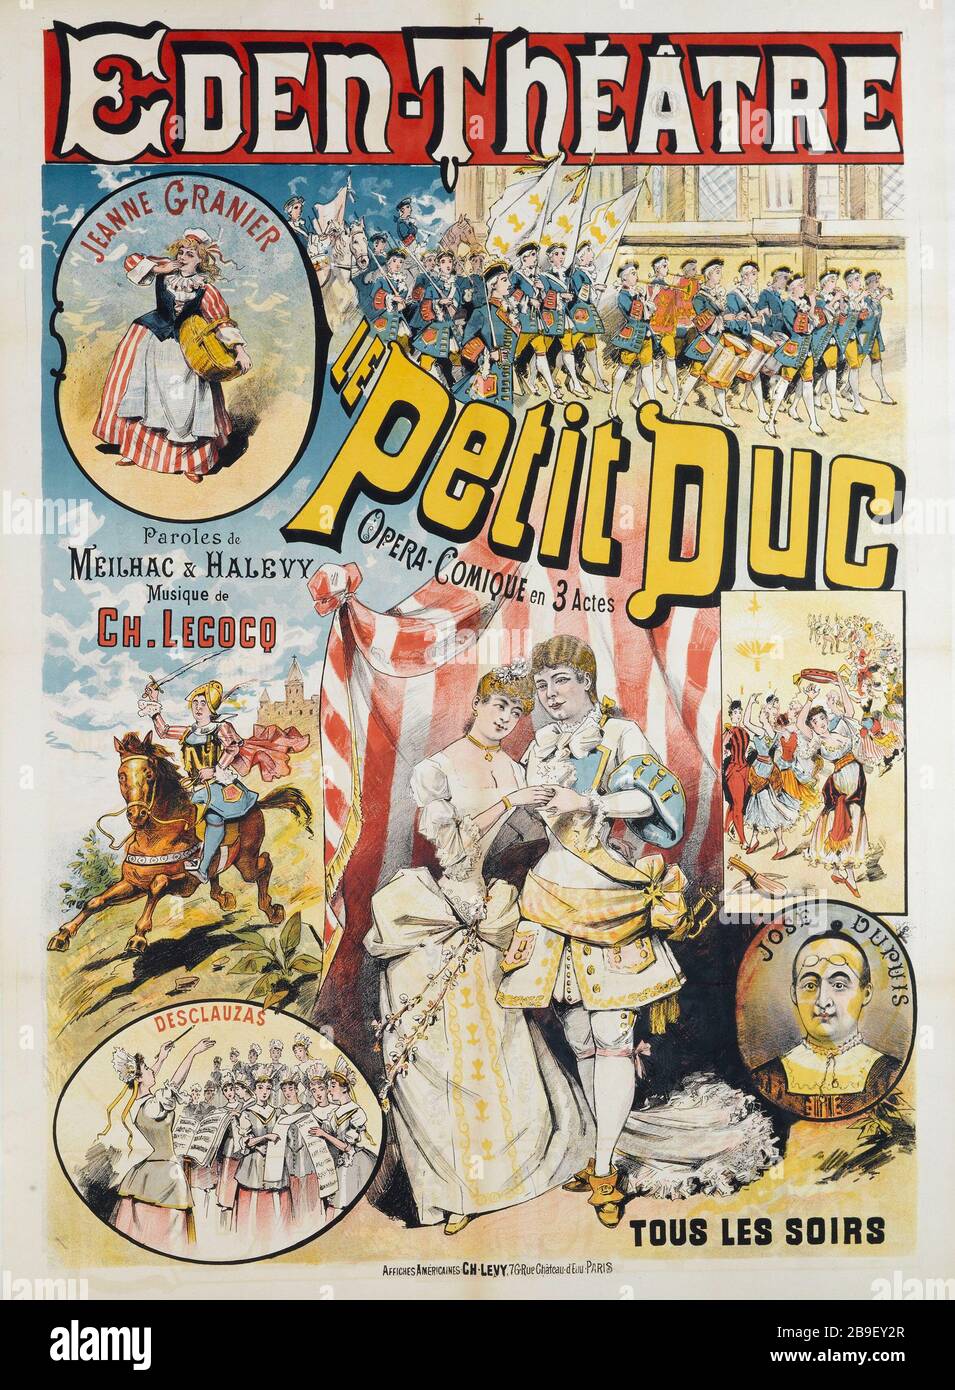 EDEN-THEATER, THE LITTLE DUKE Charles Lévy. Eden-Théâtre. 'Le Petit Duc'. Affiche. Lithographie couleur, vers 1888. Paris, musée Carnavalet. Stock Photo